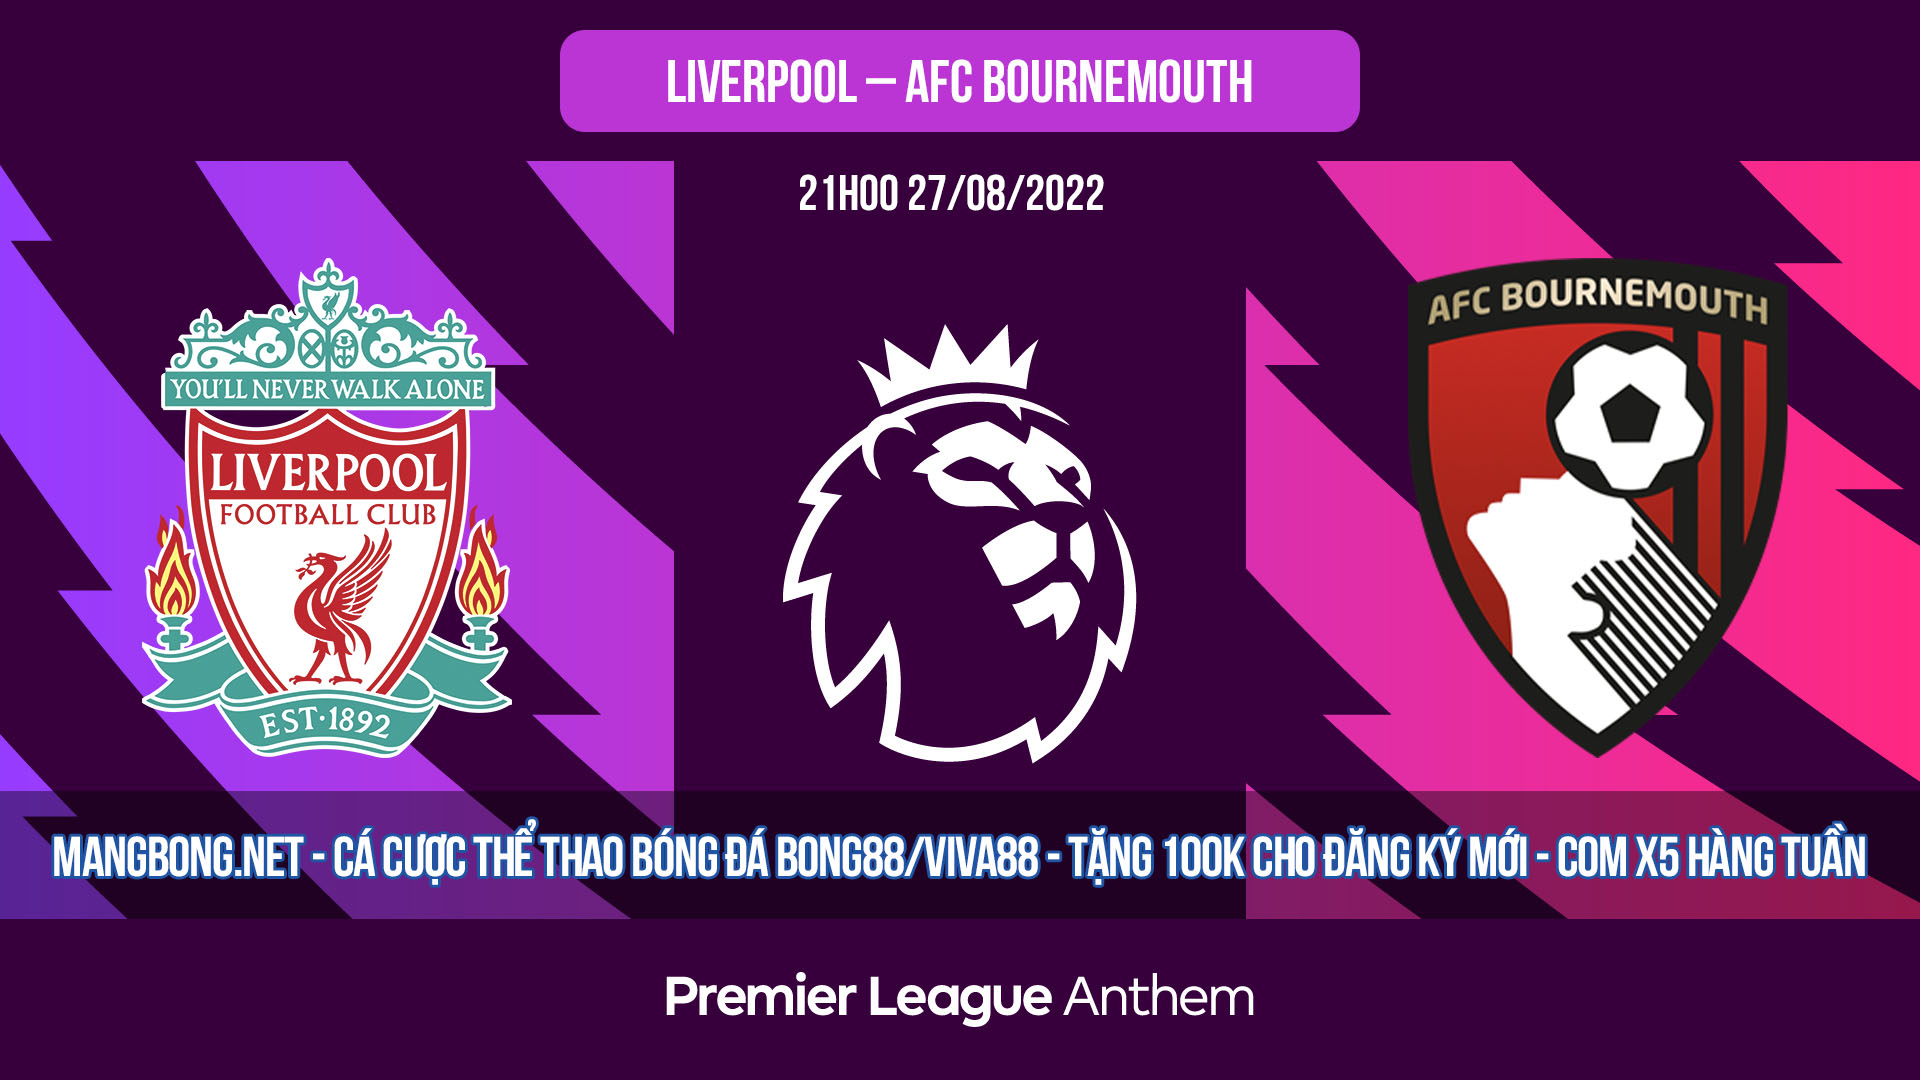 Soi kèo bóng đá Liverpool vs AFC Bournemouth – 21h00 27-08-2022